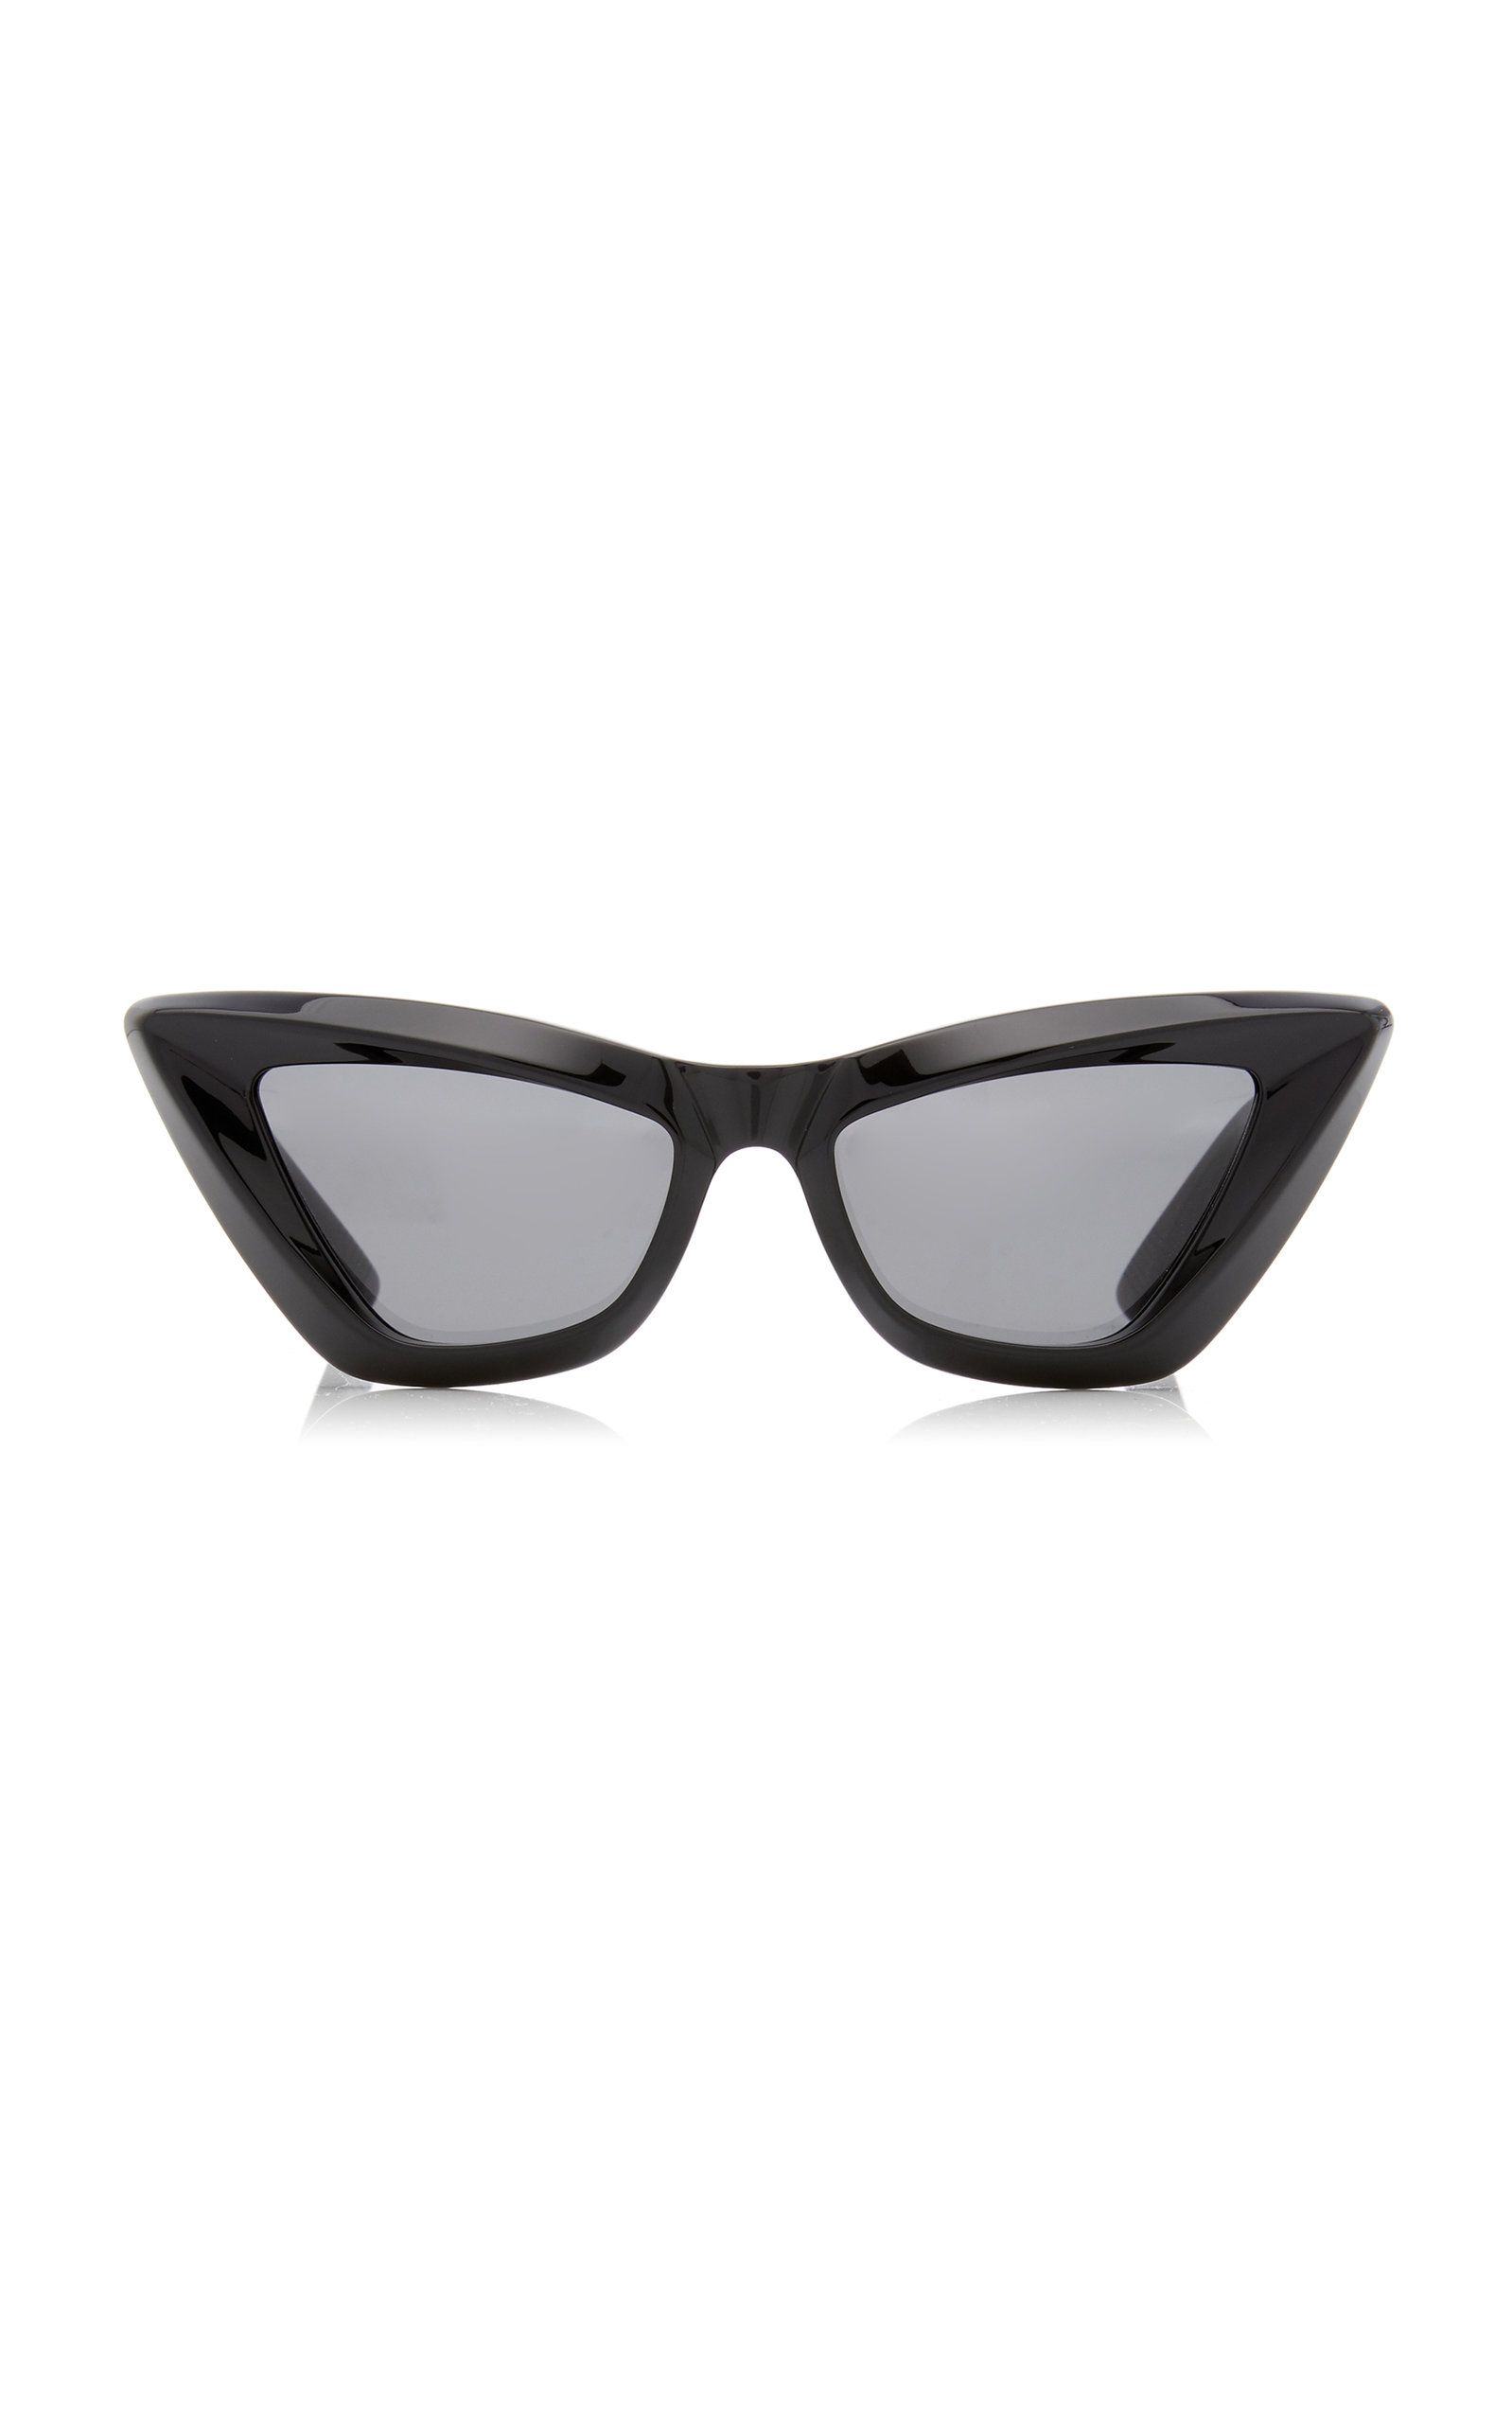 Bottega Veneta - Women's Edgy Cat-Eye Acetate Sunglasses - Black - OS - Moda Operandi | Moda Operandi (Global)